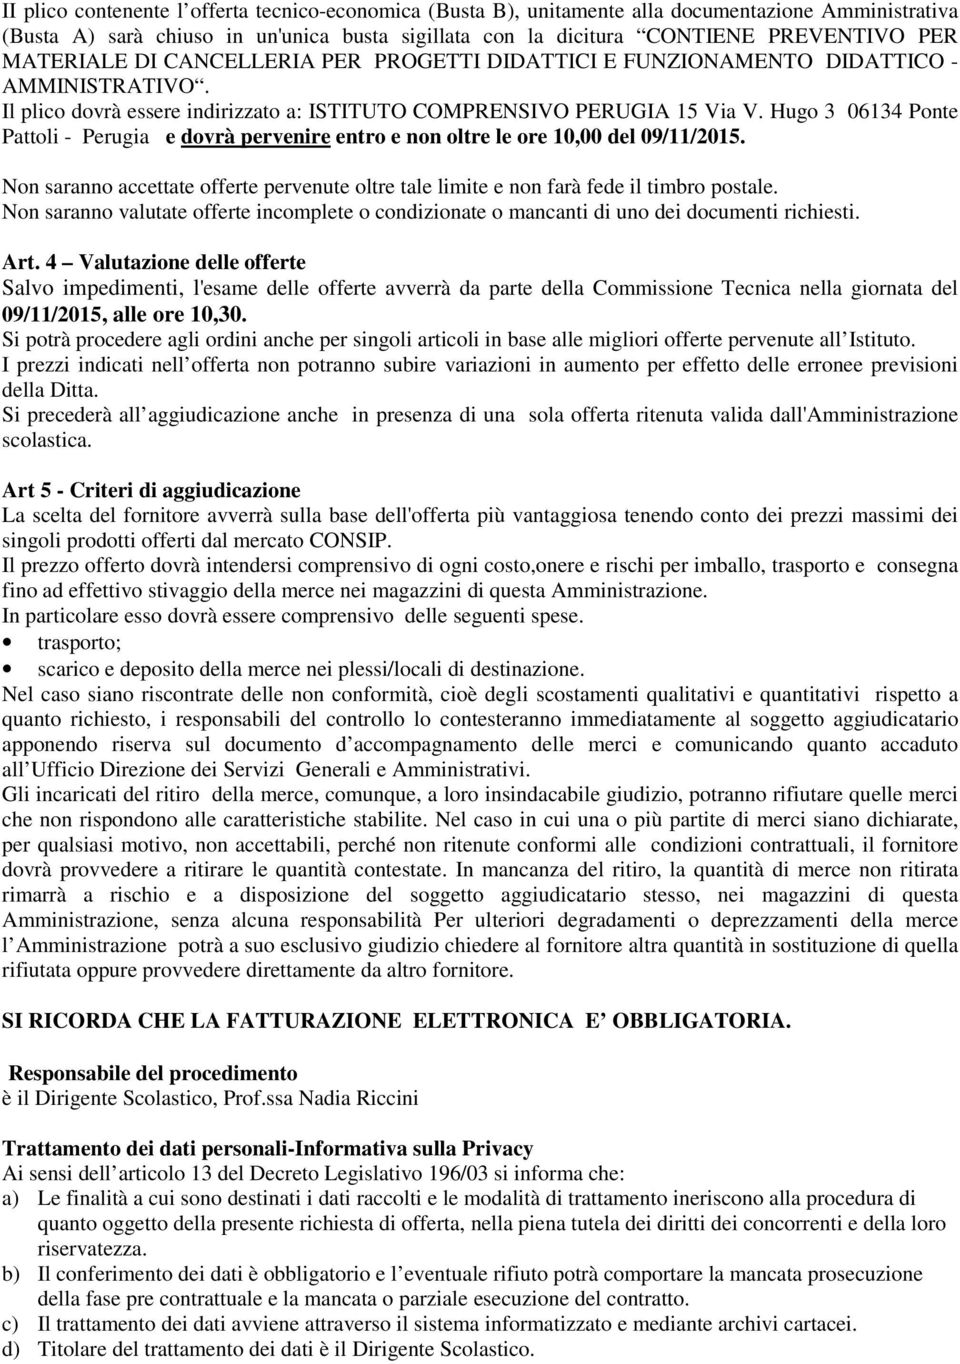 Hugo 3 06134 Ponte Pattoli - Perugia e dovrà pervenire entro e non oltre le ore 10,00 del 09/11/2015. Non saranno accettate offerte pervenute oltre tale limite e non farà fede il timbro postale.